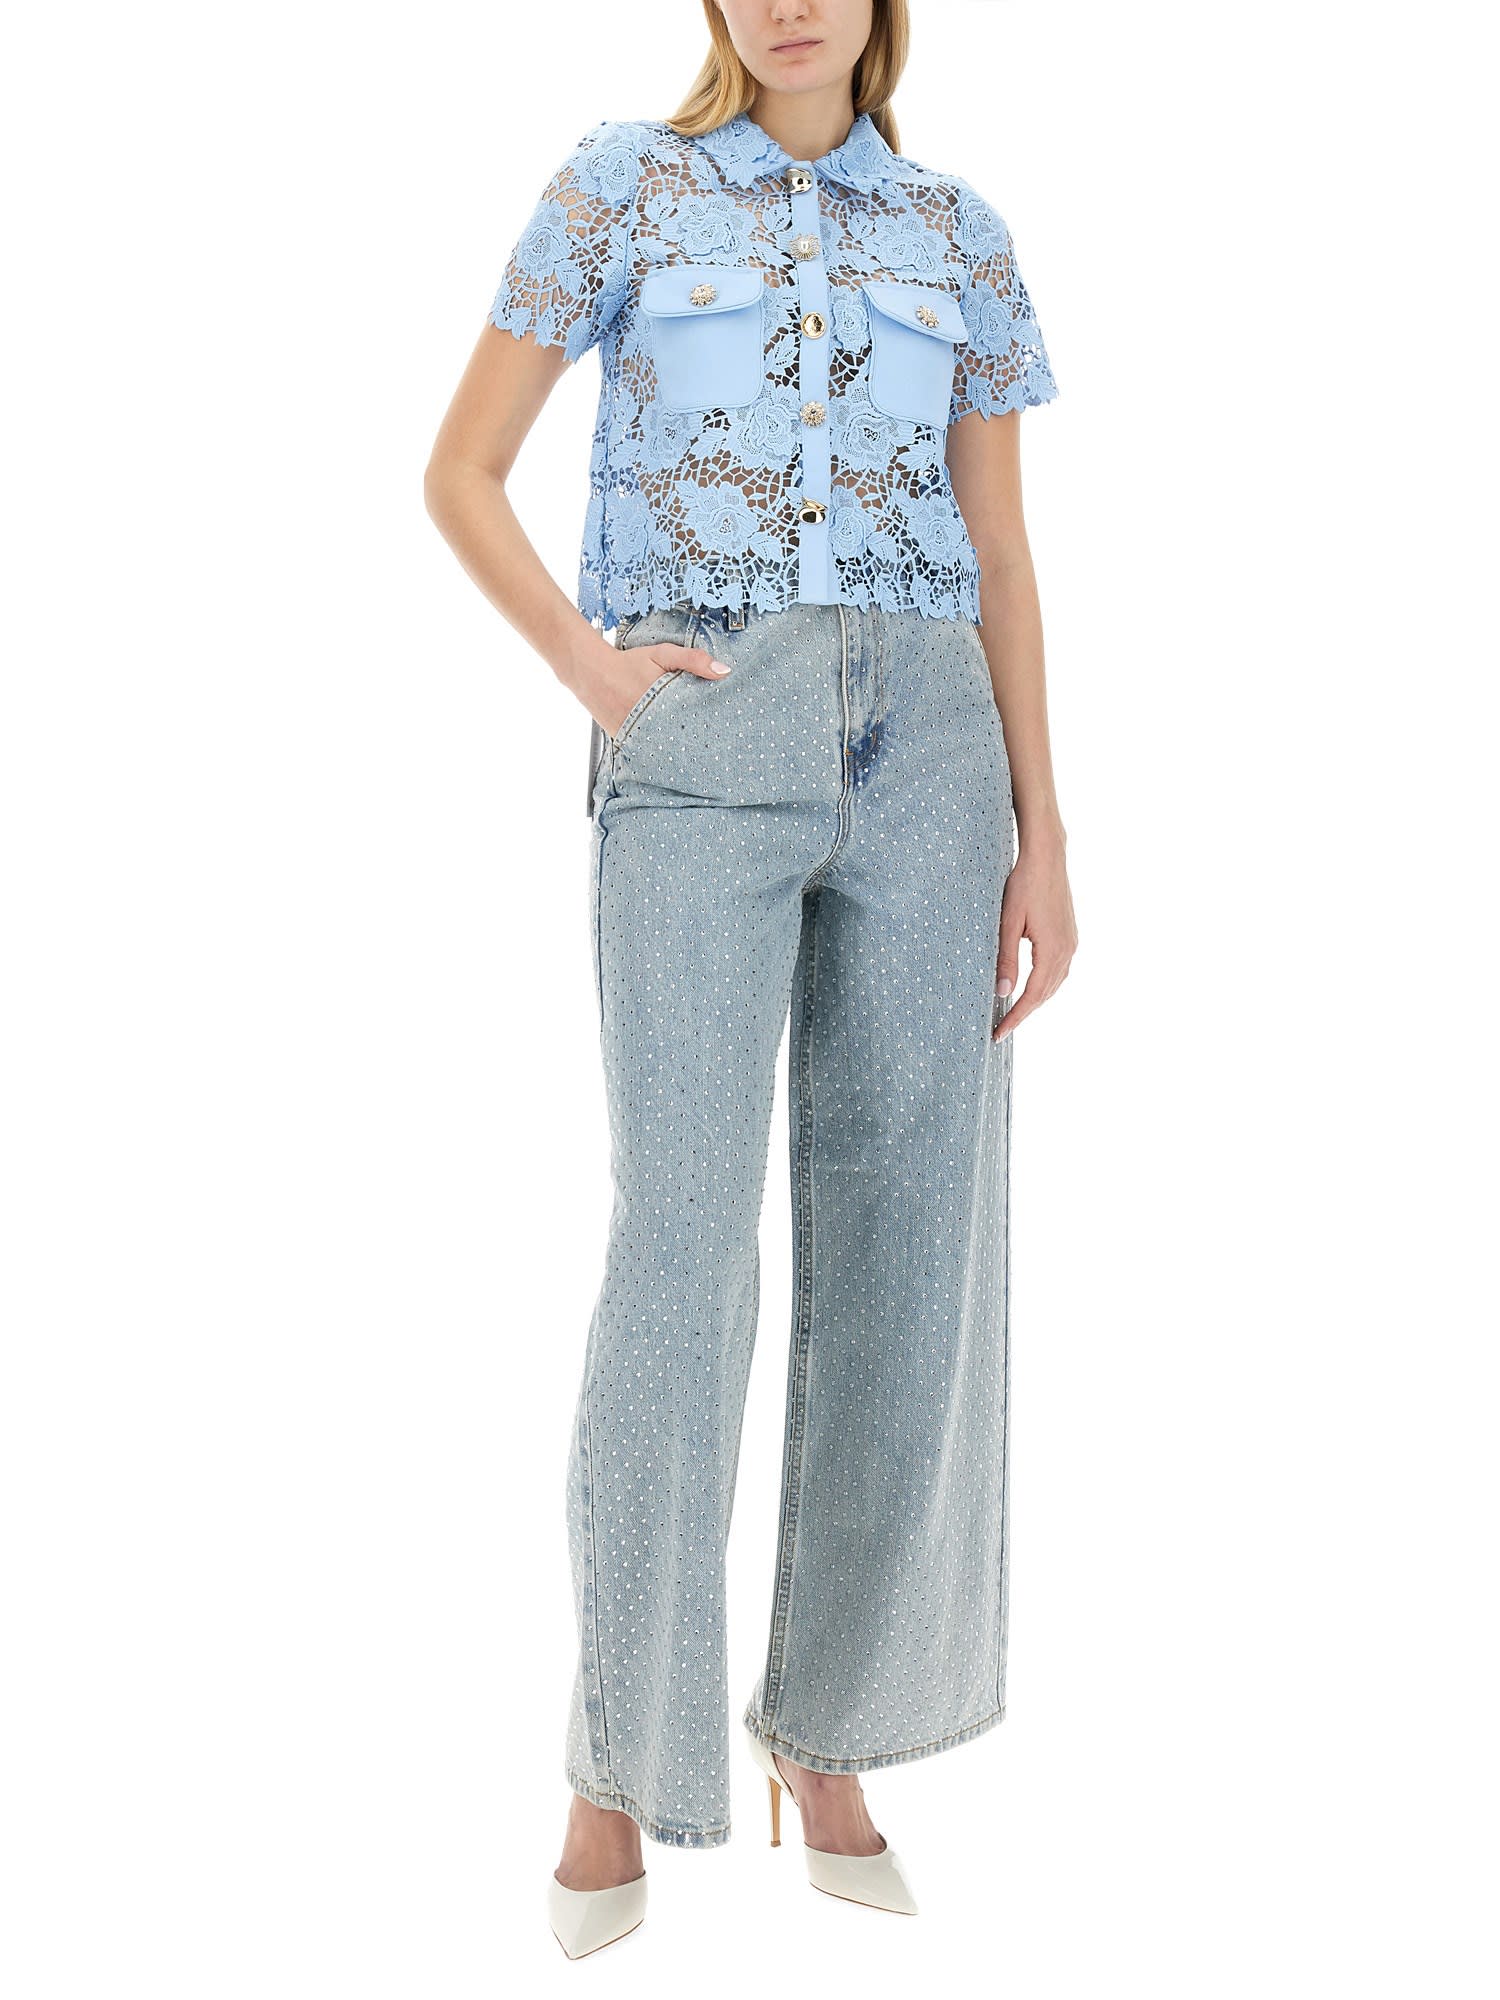 SELF-PORTRAIT, Rhinestone Embellished Wide Leg Jeans, Women